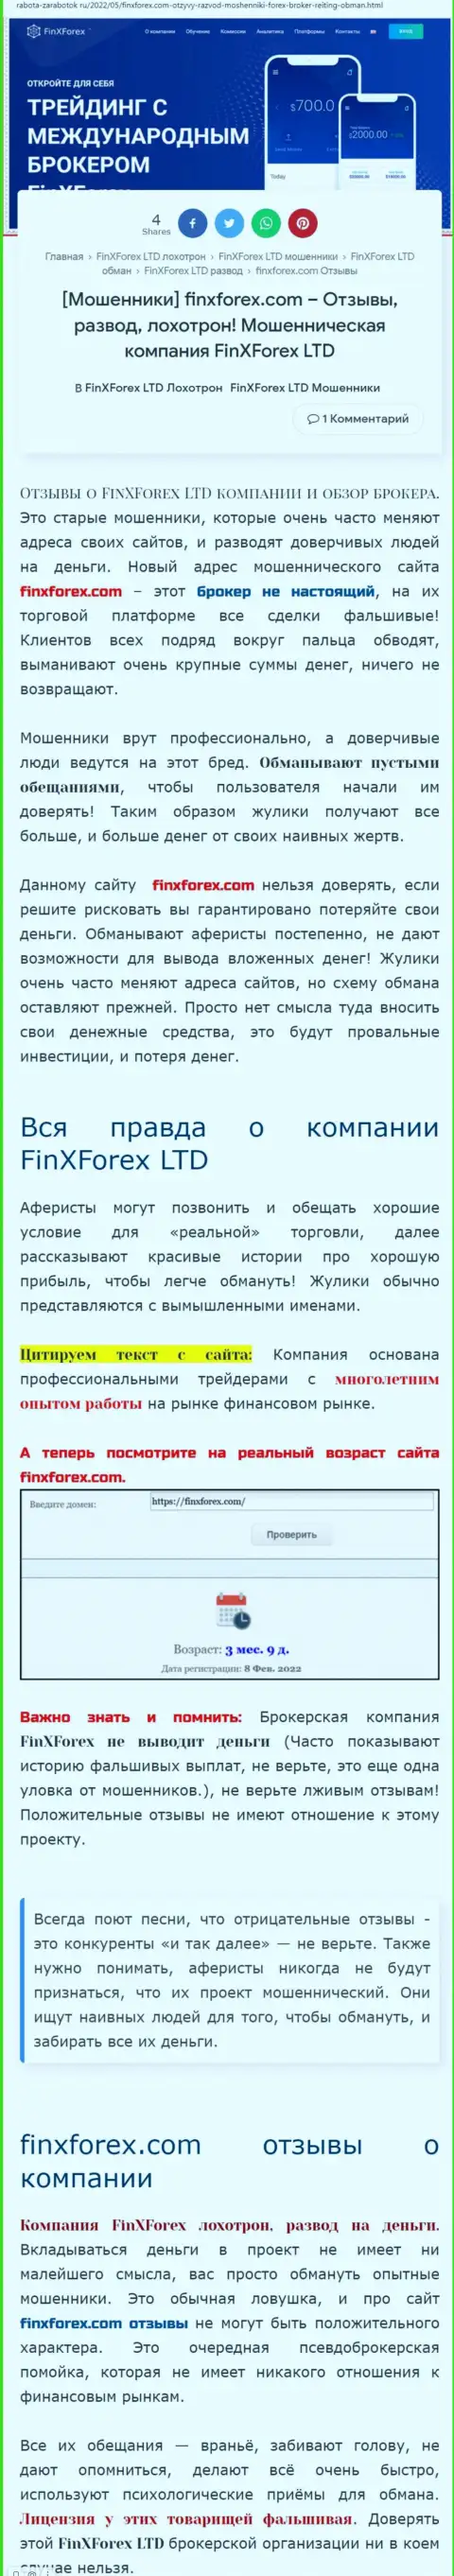 Автор обзора об FinXForex LTD пишет, что в компании ФинХФорекс лохотронят